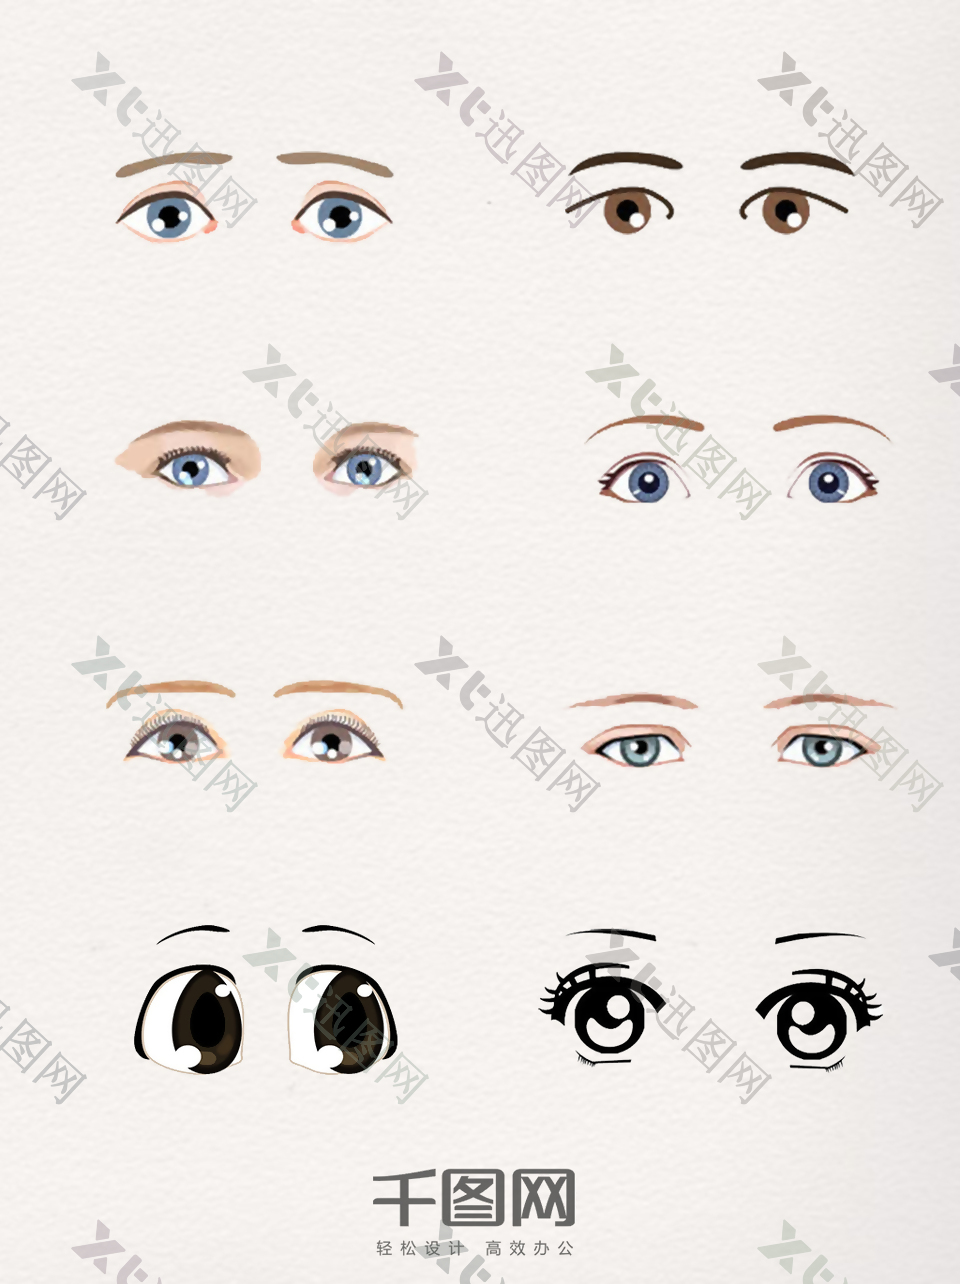 一组不同神态的眼睛手绘图